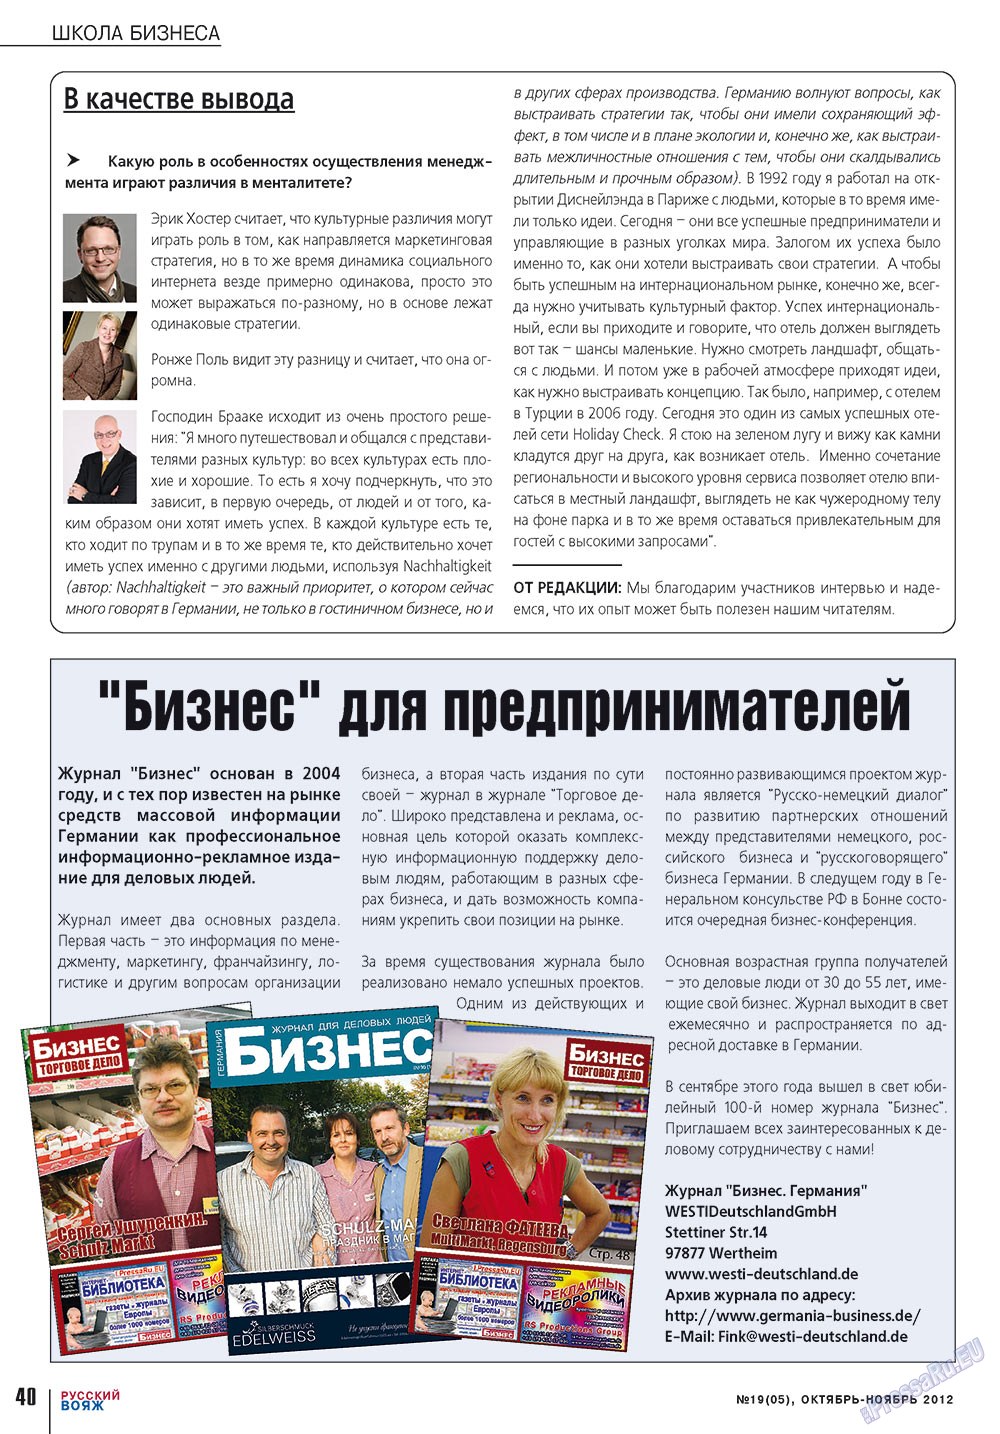 Русский вояж (журнал). 2012 год, номер 19, стр. 40